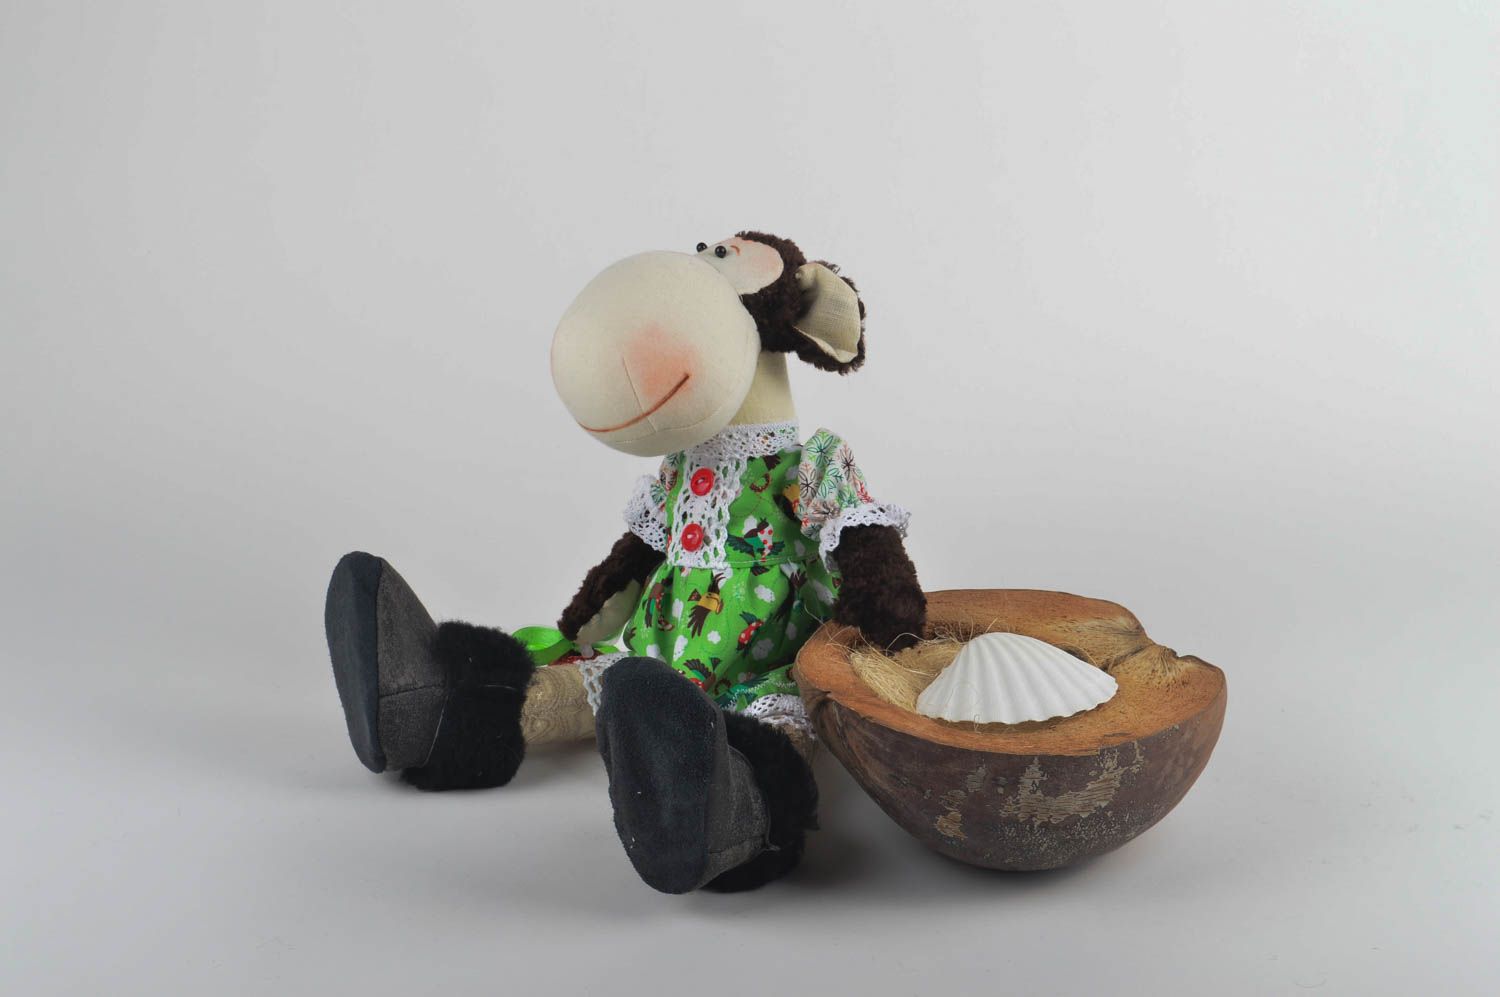 Игрушка обезьяна хэнд мэйд детская игрушка из льна мягкая игрушка текстильная фото 1